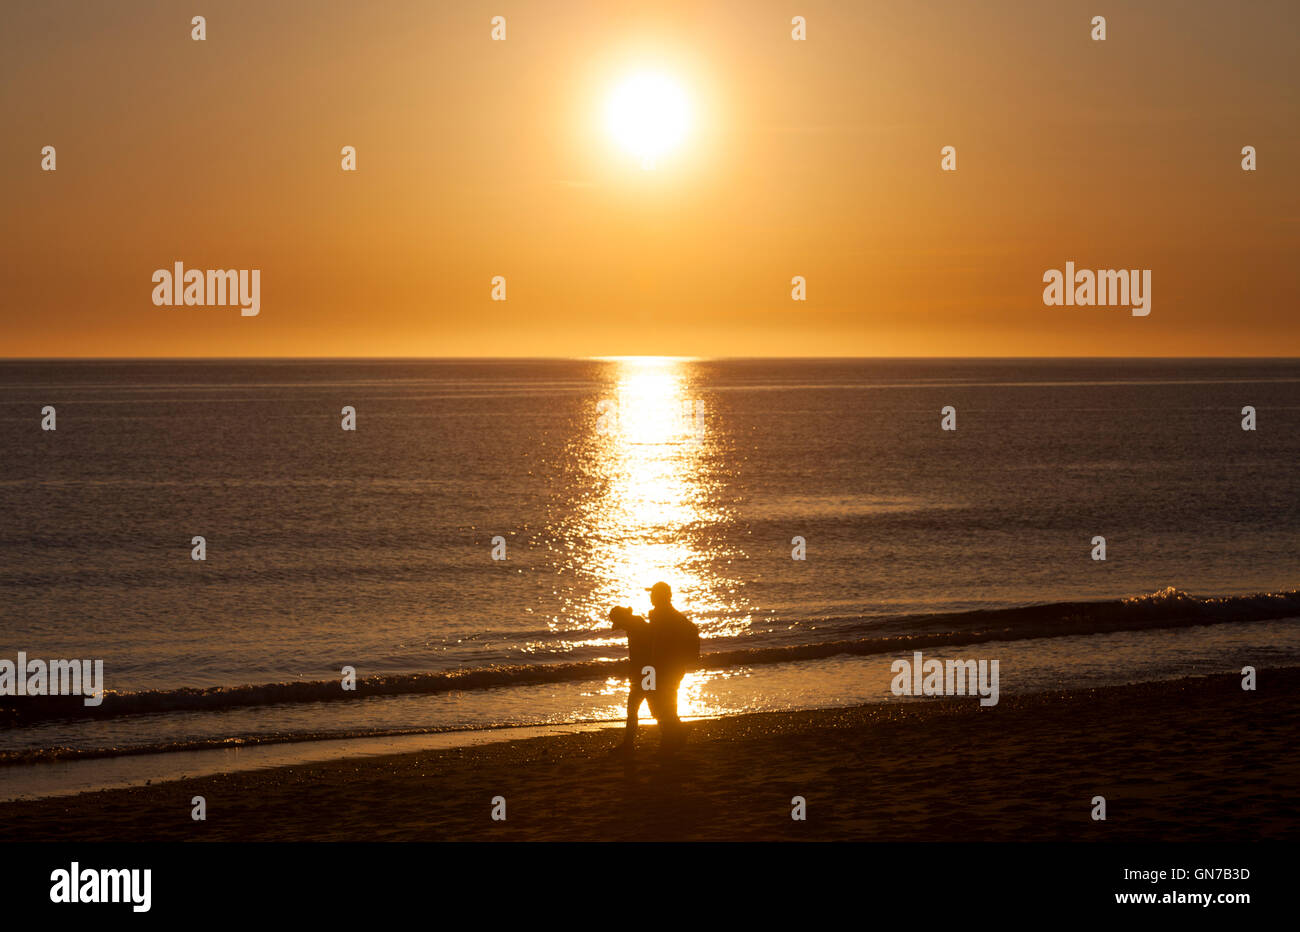 Una puesta de sol sobre el océano y la silueta de 2 personas caminando por la playa. Foto de stock